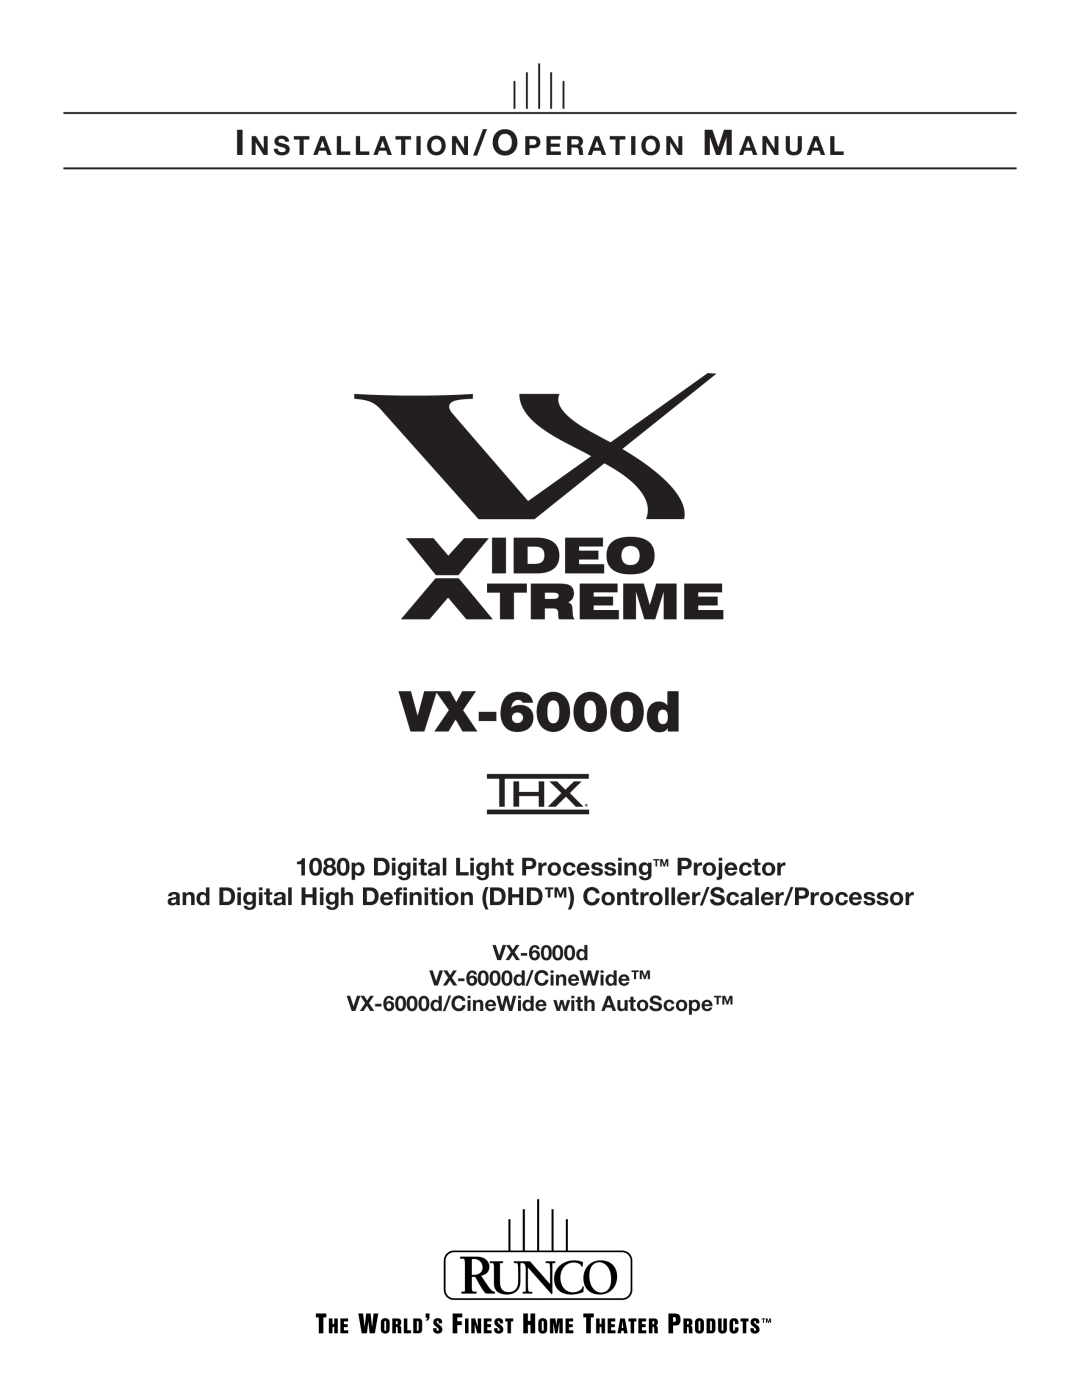 Runco VX-6000D operation manual VX-6000d VX-6000d/CineWide VX-6000d/CineWide with AutoScope 